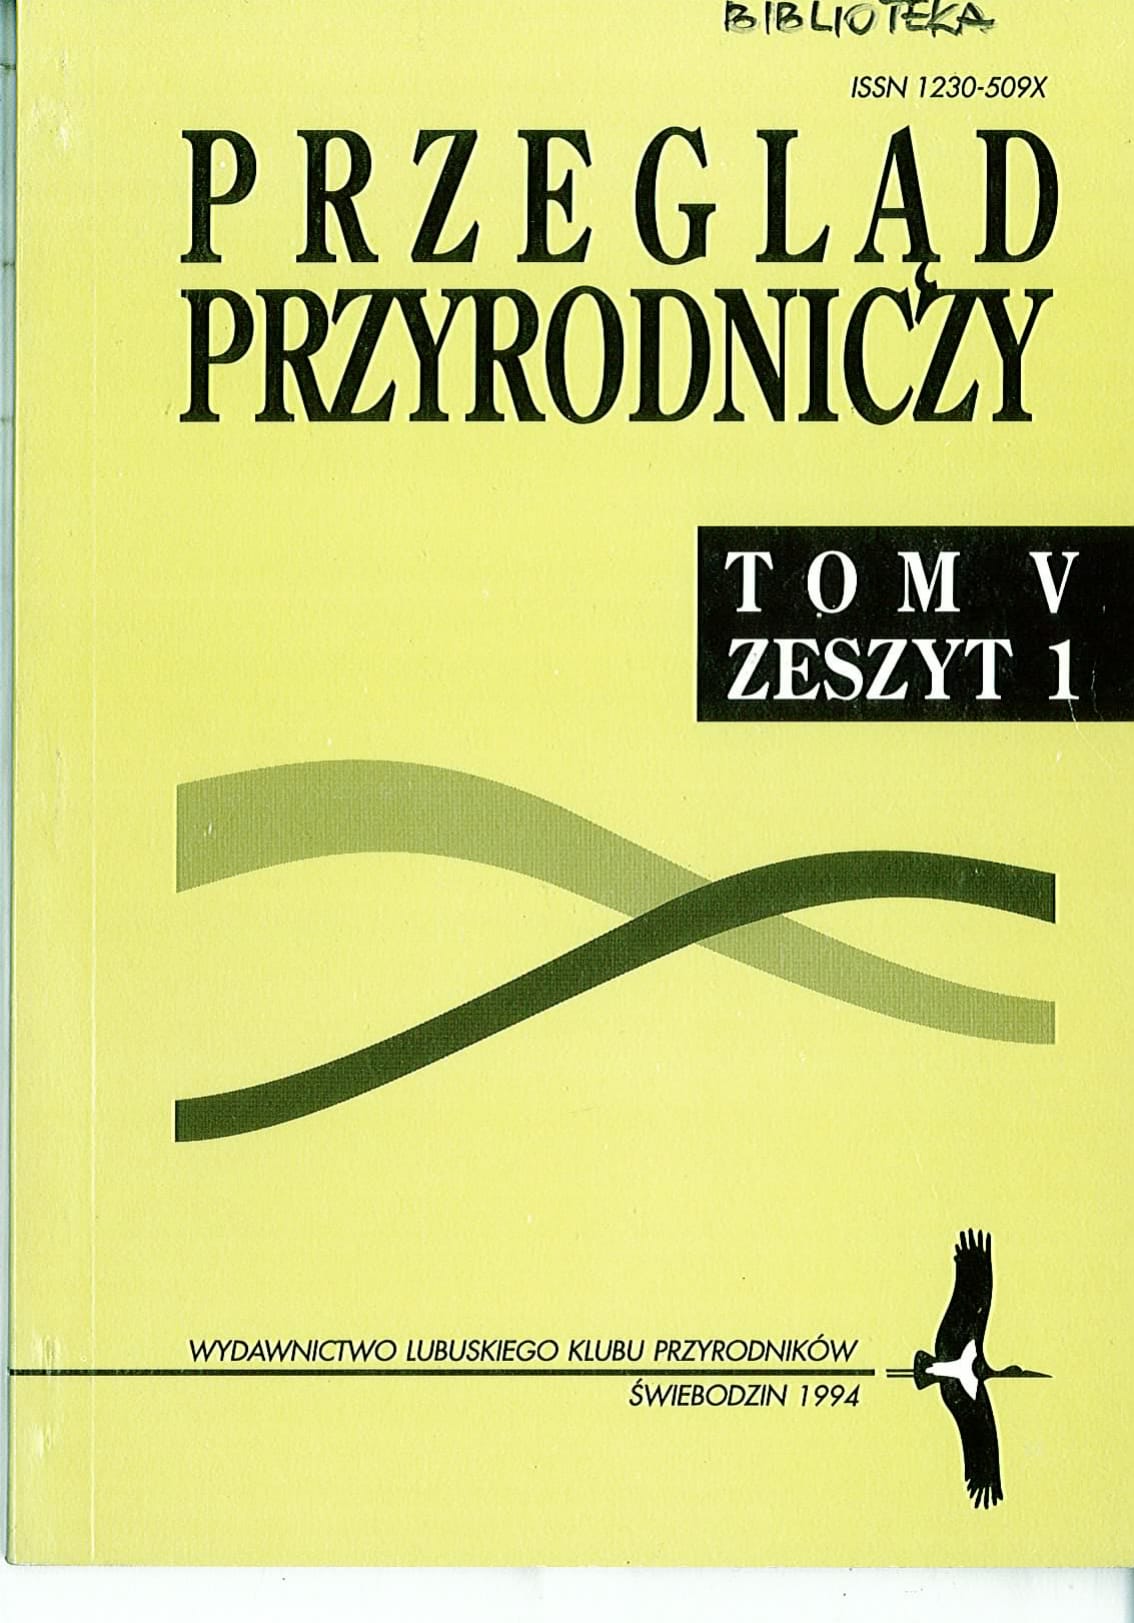 PP T.5 Z.1 1994 1